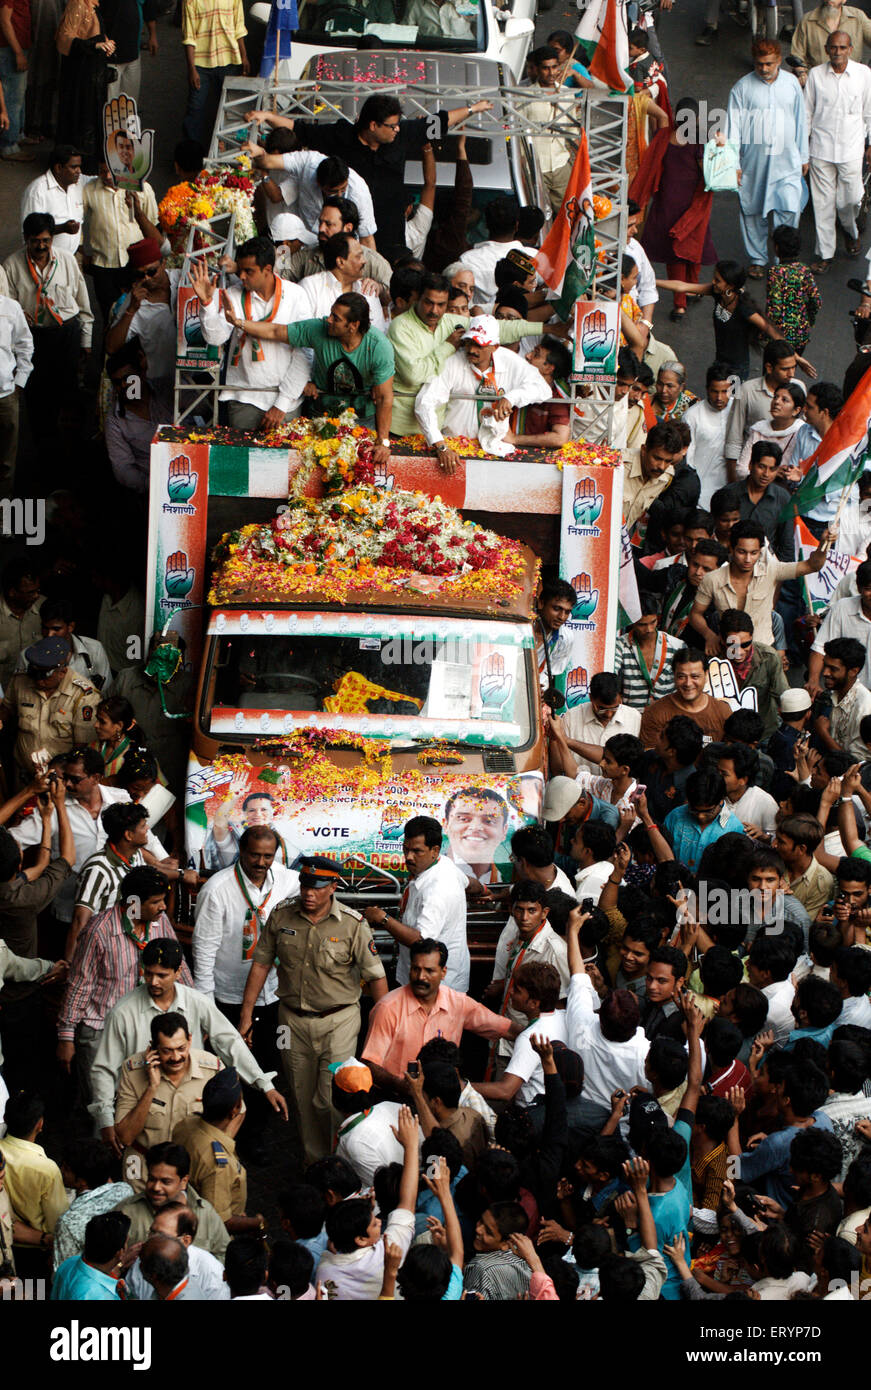 Campagna elettorale indiana, Salman Khan, attore indiano di bollywood , che si batte per il candidato indiano al Congresso nazionale Milind Deora a Bombay Mumbai India Foto Stock